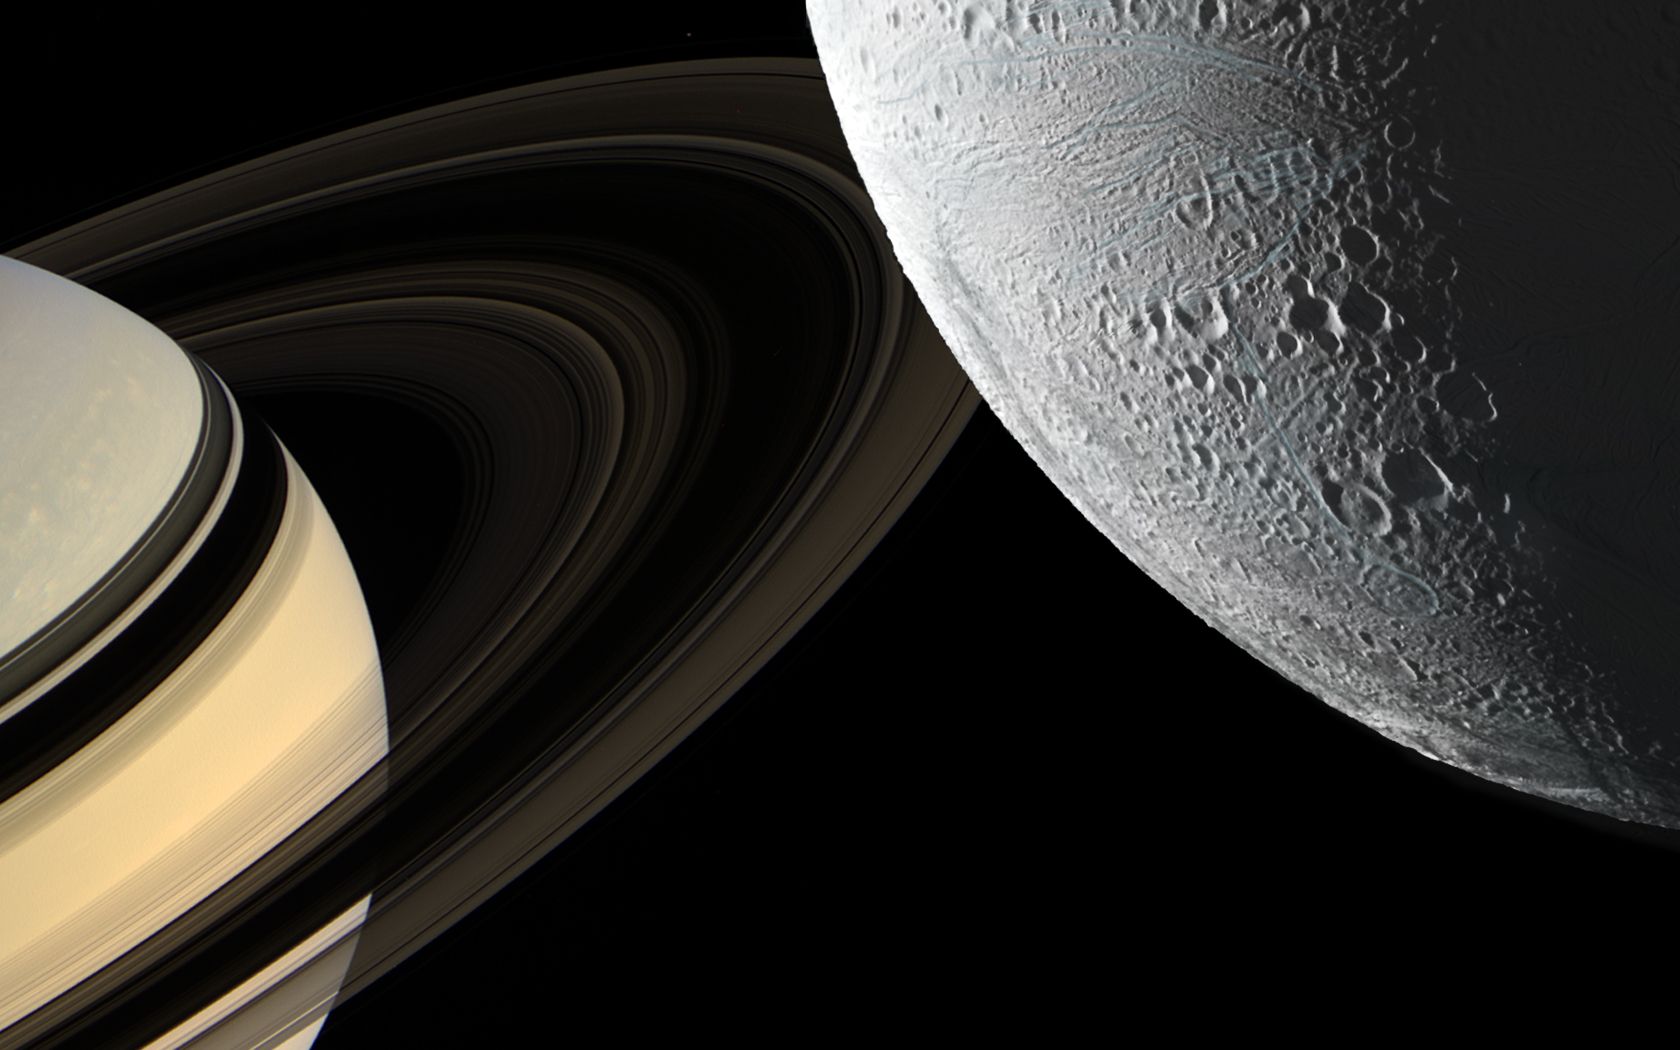 Descarga gratuita de fondo de pantalla para móvil de Luna, Espacio, Planeta, Ciencia Ficción, Saturno, Anillo Planetario, Encelado.